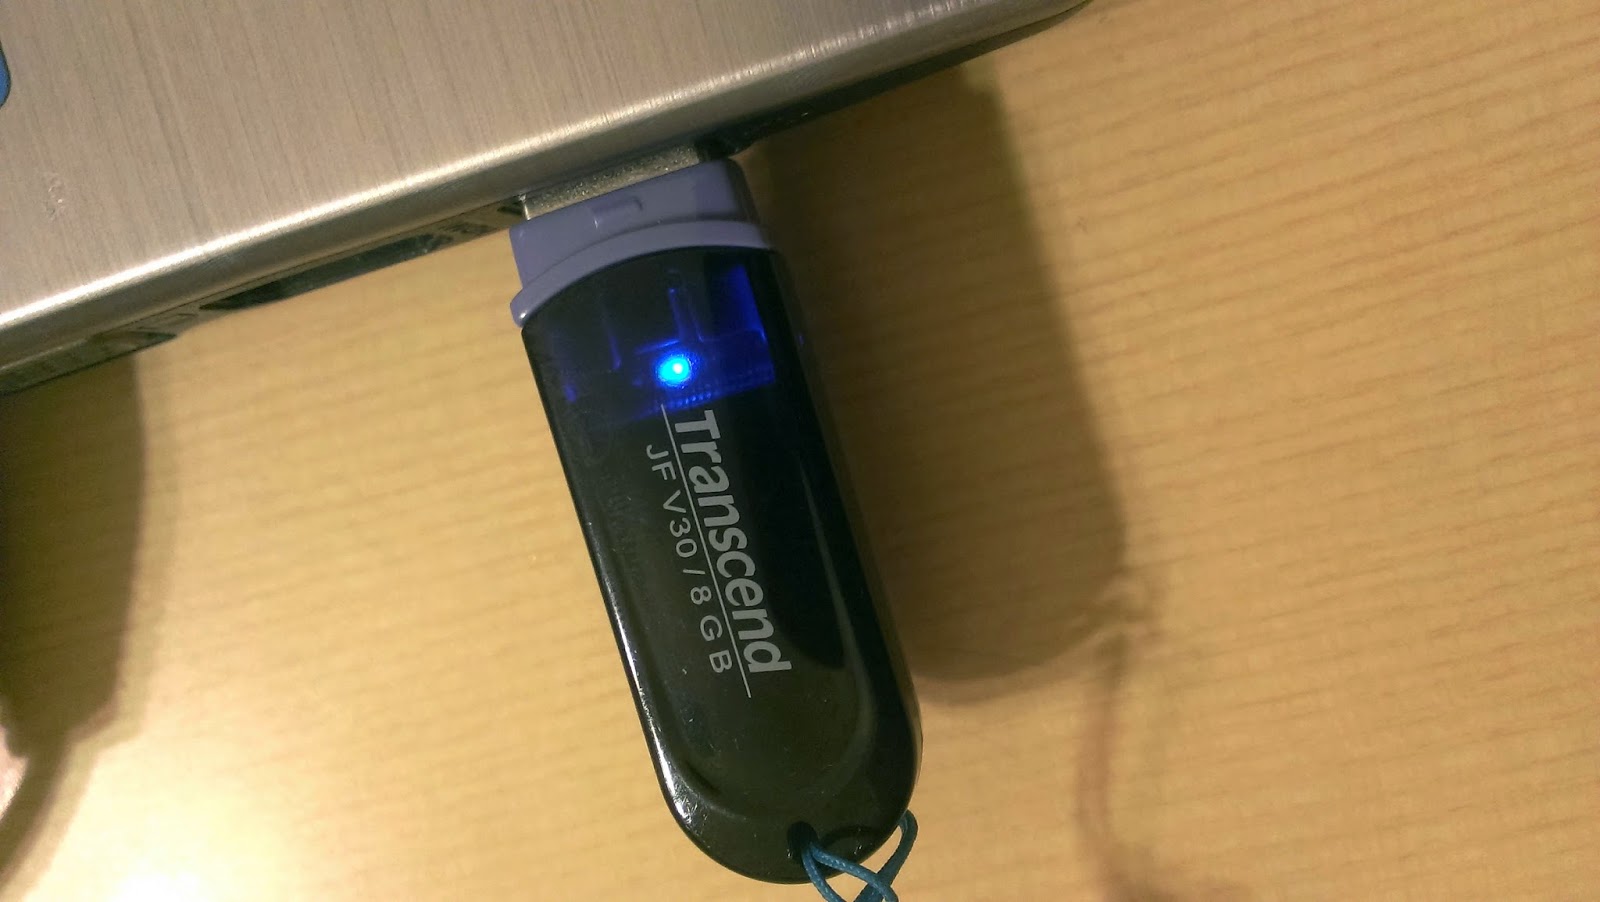 2014 12 20%2B21.16.08 - USB 隨身碟容量變小、消失的解決辦法